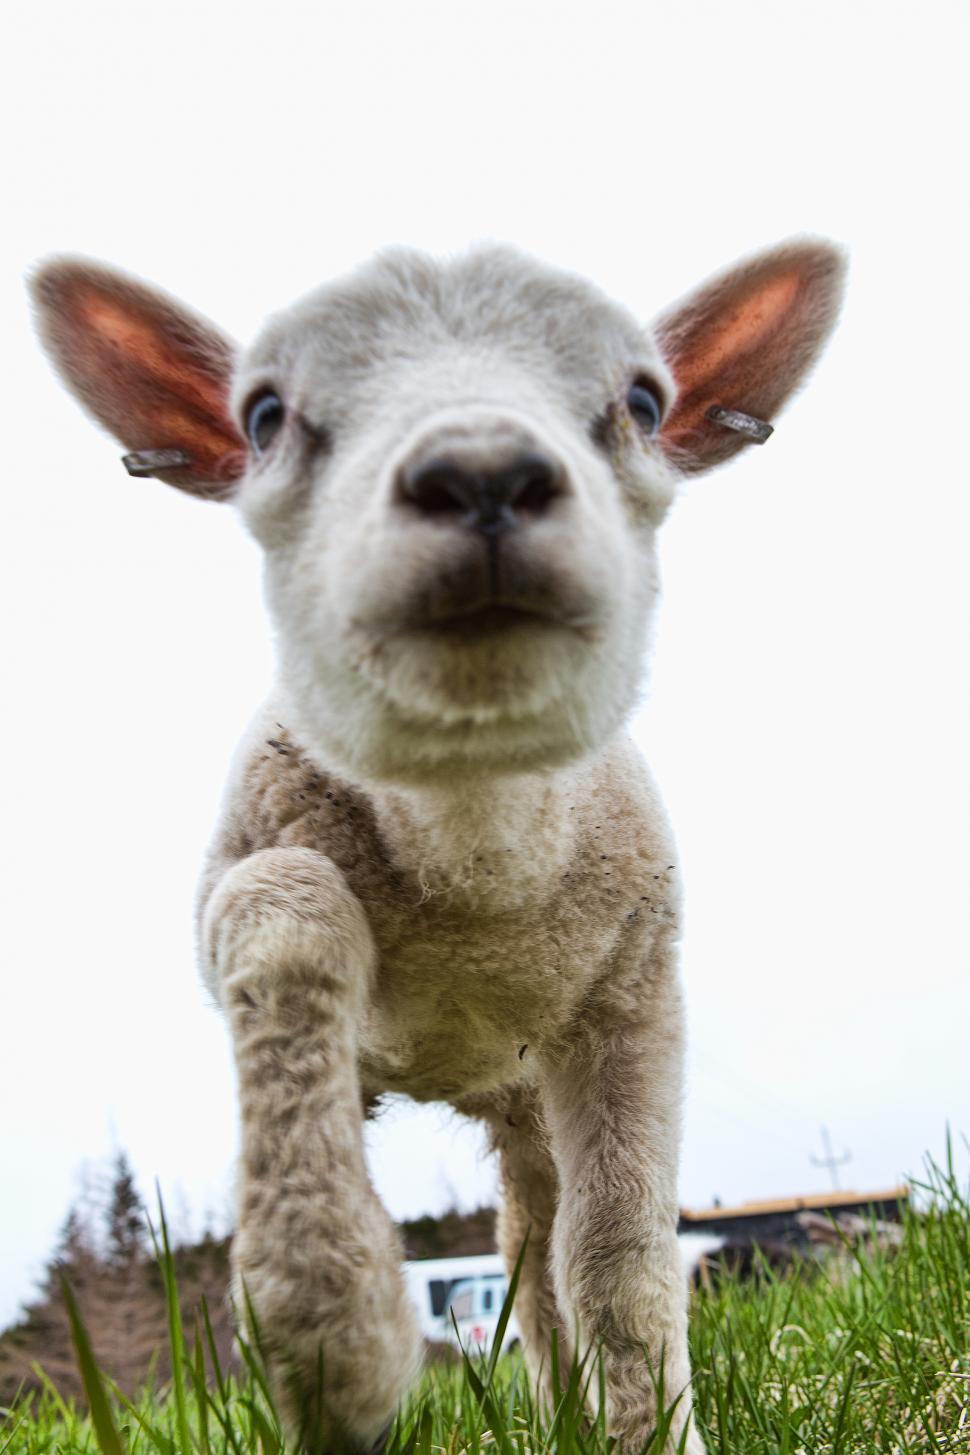 Free Image of Sheep 